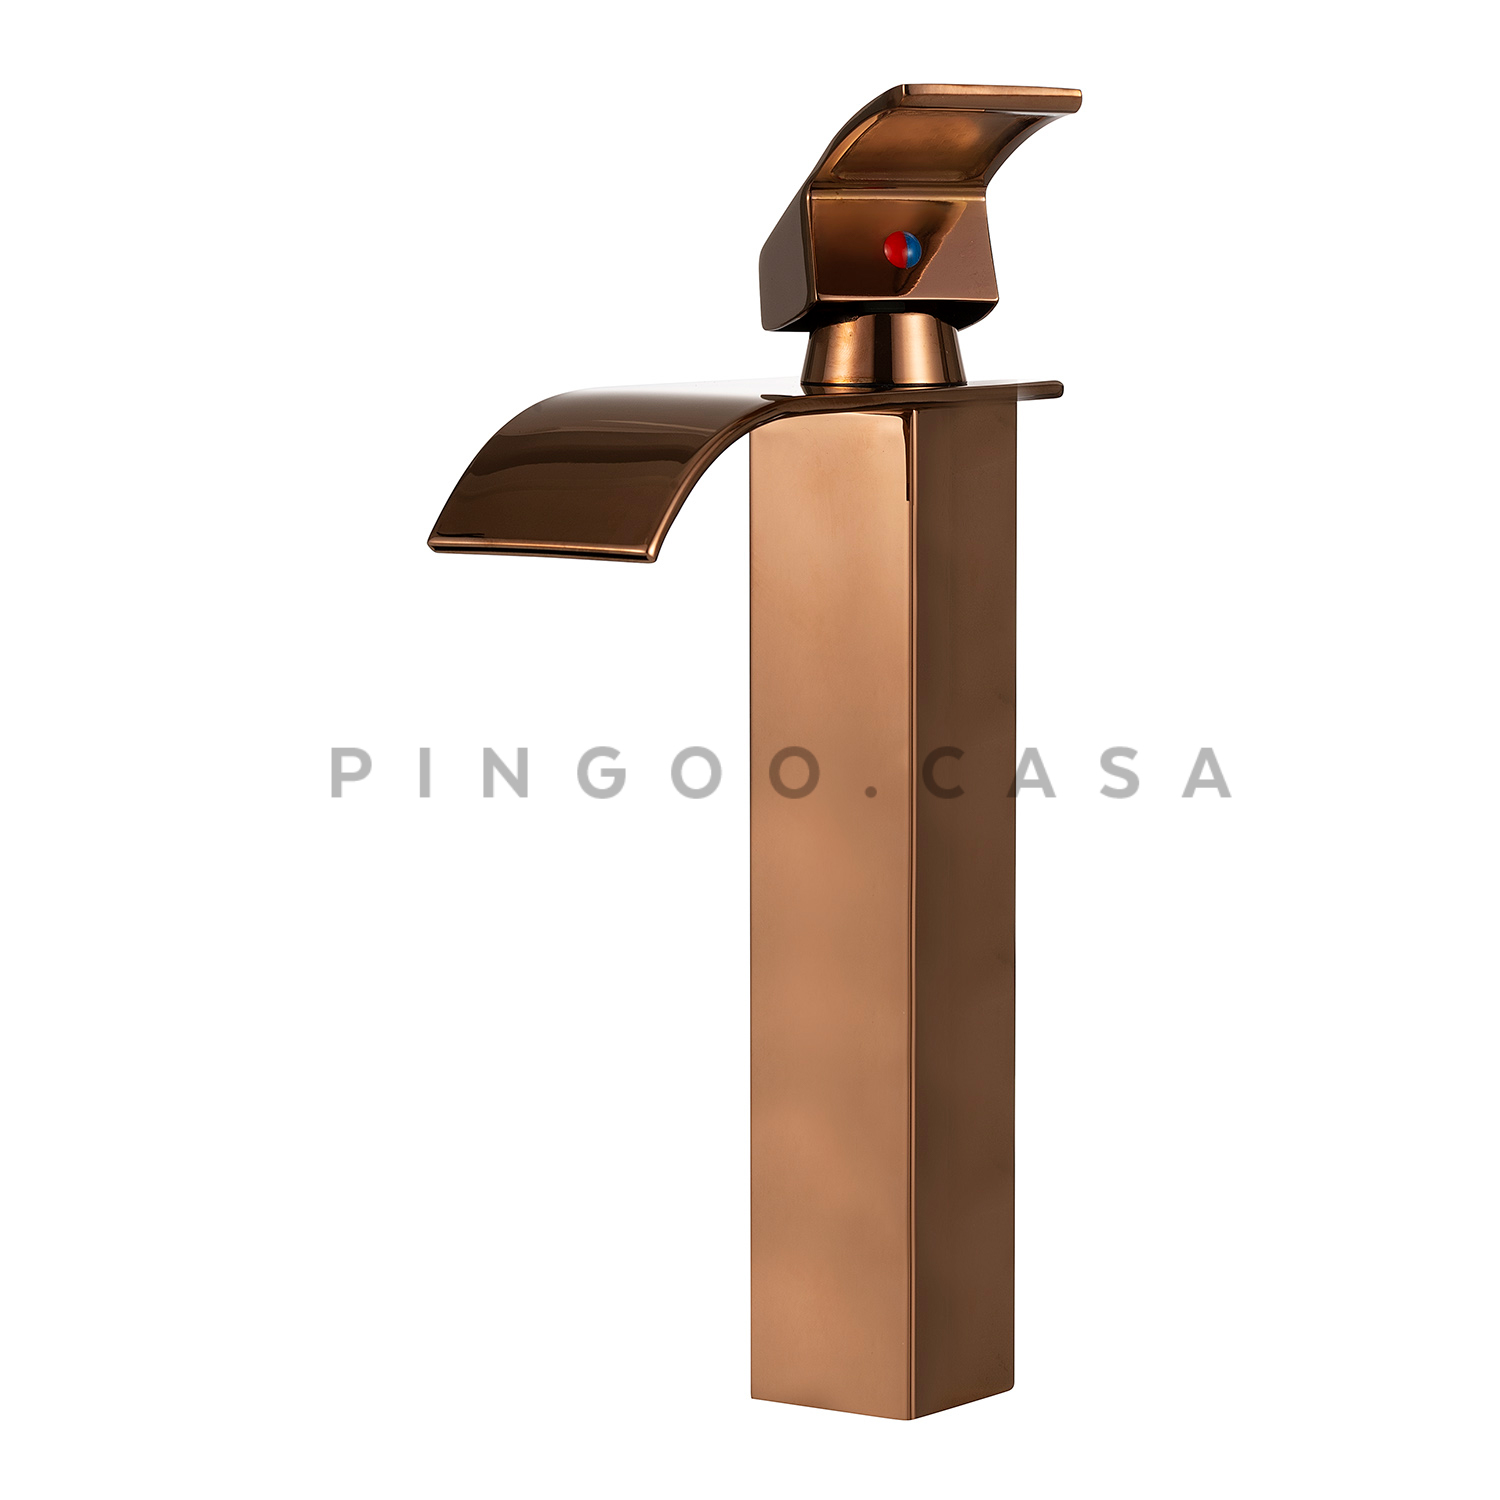 Torneira Para Banheiro Cascata Misturador Monocomando Alta Paraná Pingoo.casa - Dourado Rose